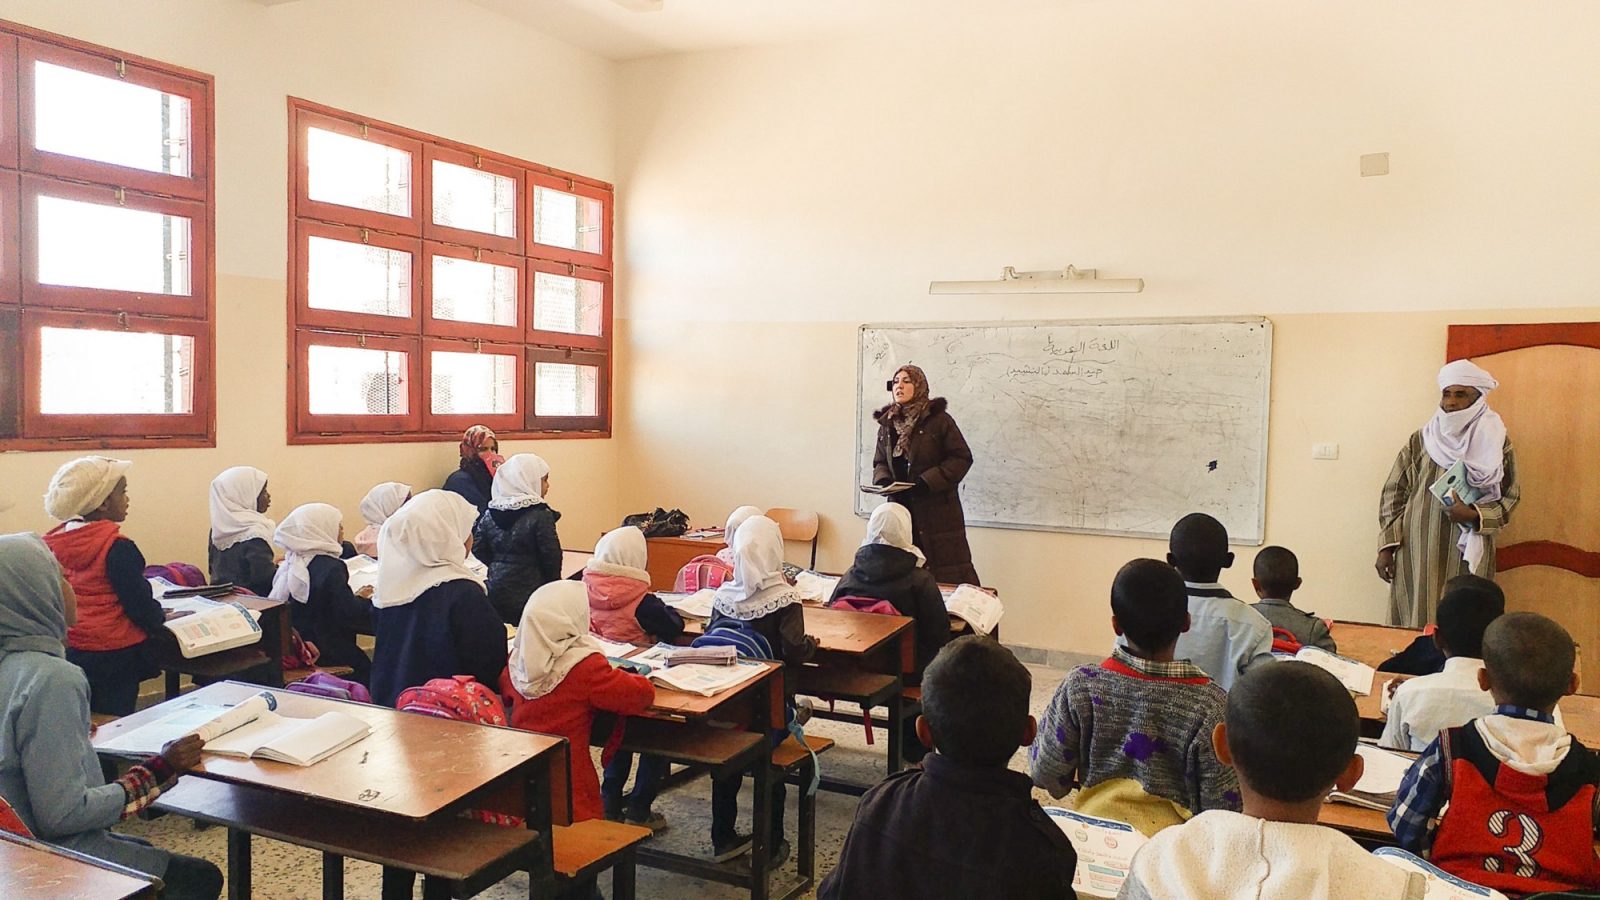 درس يدور داخل قاعة في مدرسة جدّدها مؤخّرا صندوق استقرار ليبيا. صور علي الشريف / © برنامج الأمم المتحدة الإنمائي في ليبيا 9 مارس 2018